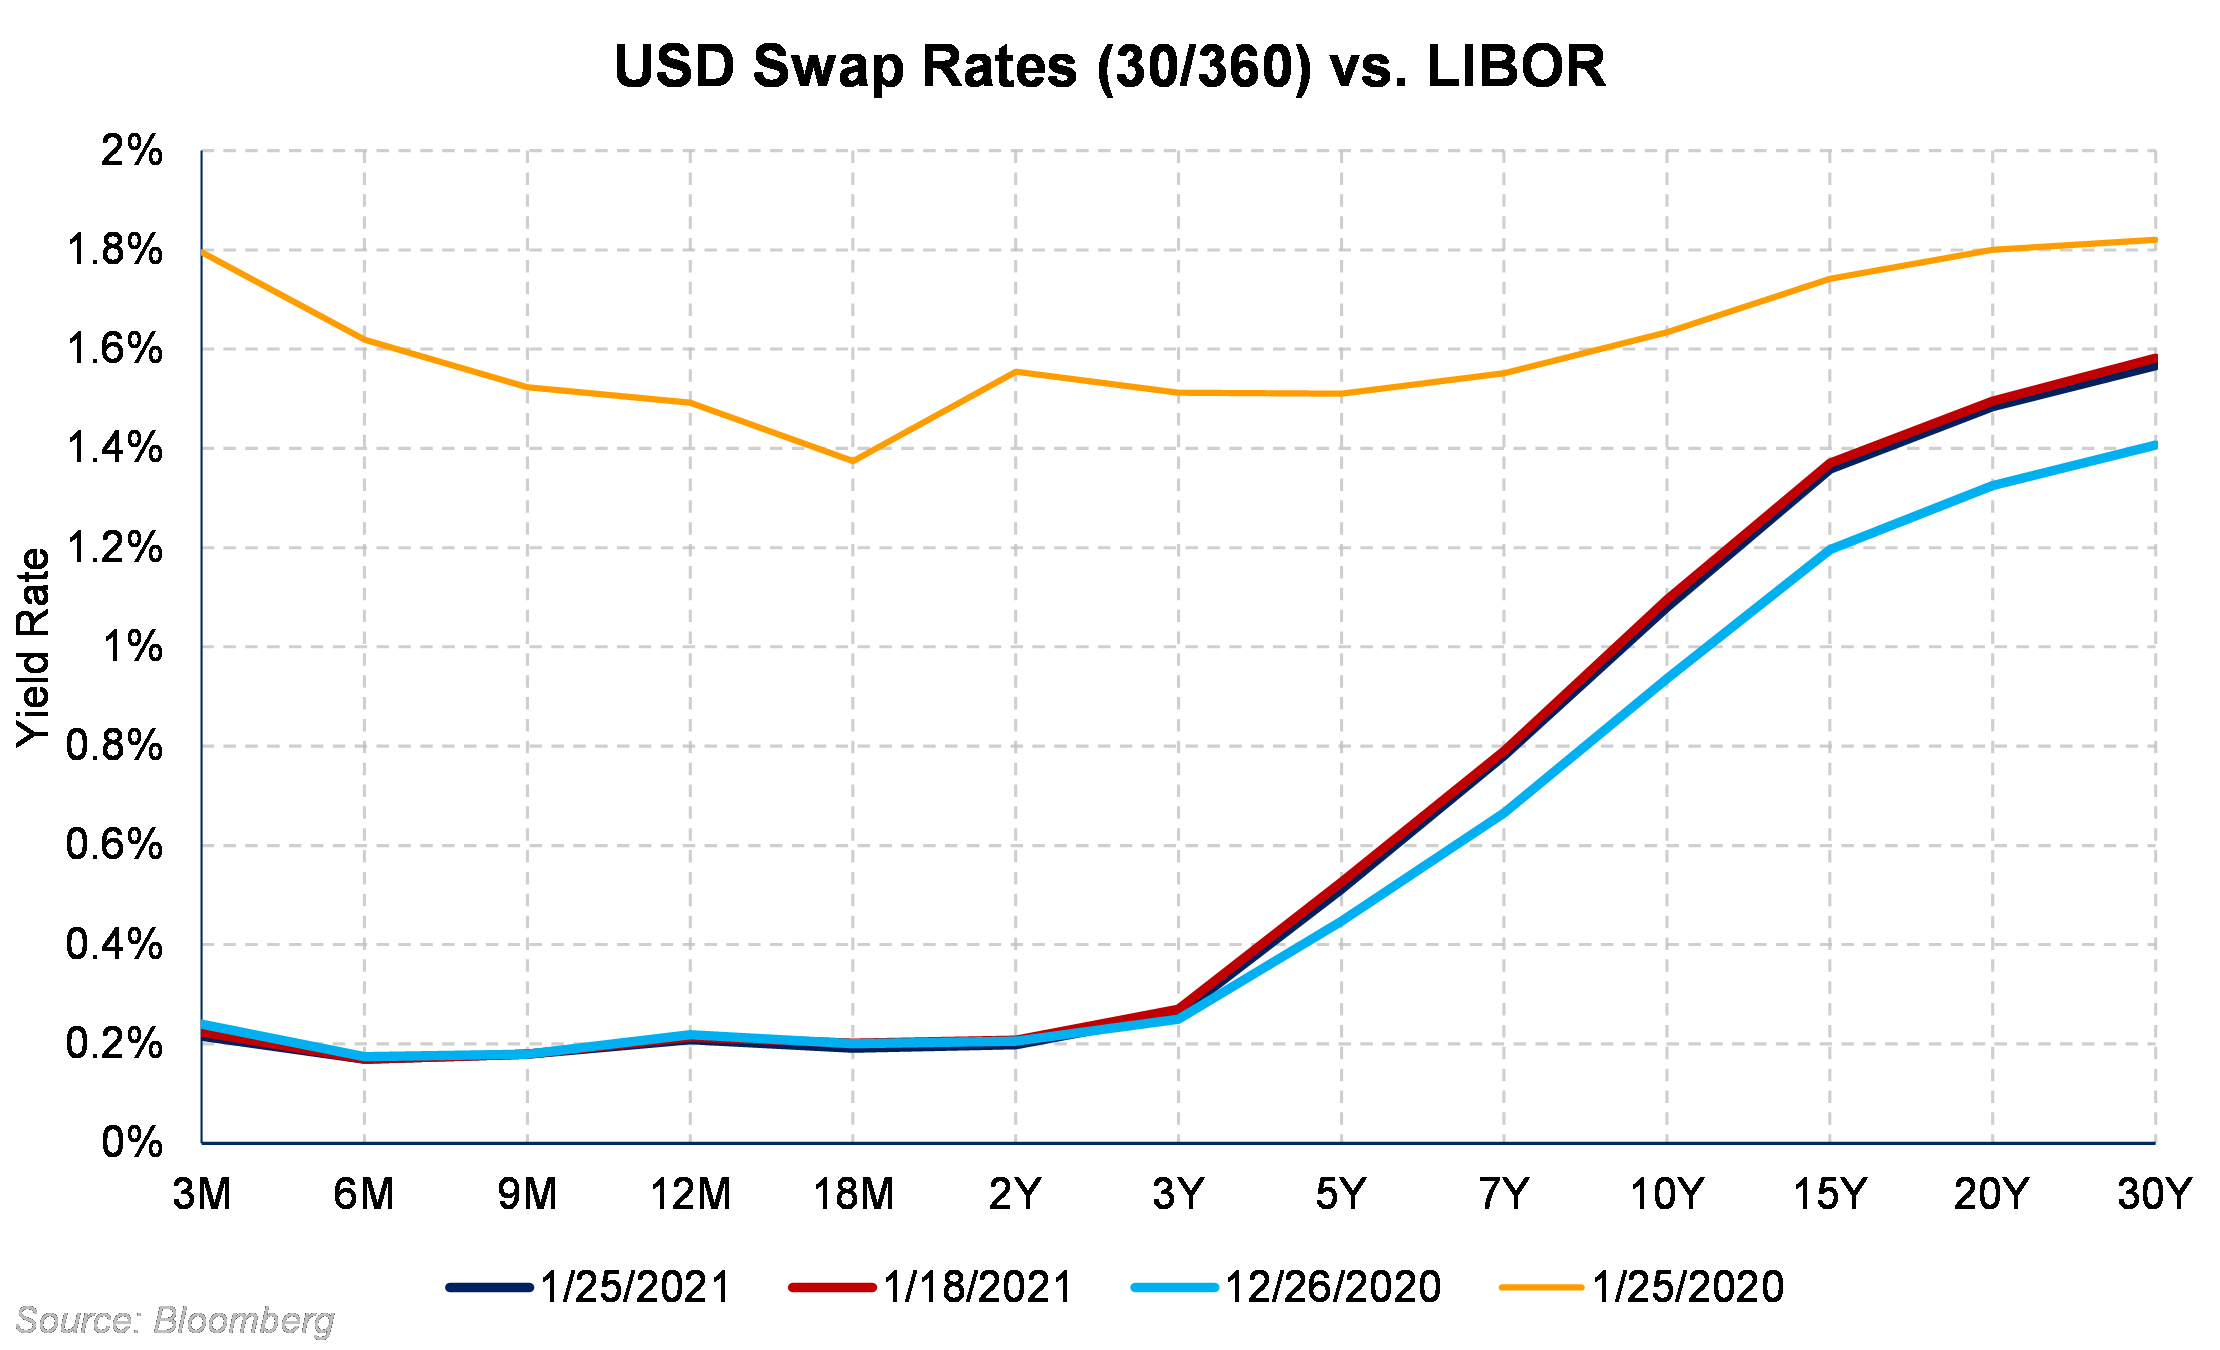 USD Swap Rates vs LIBOR